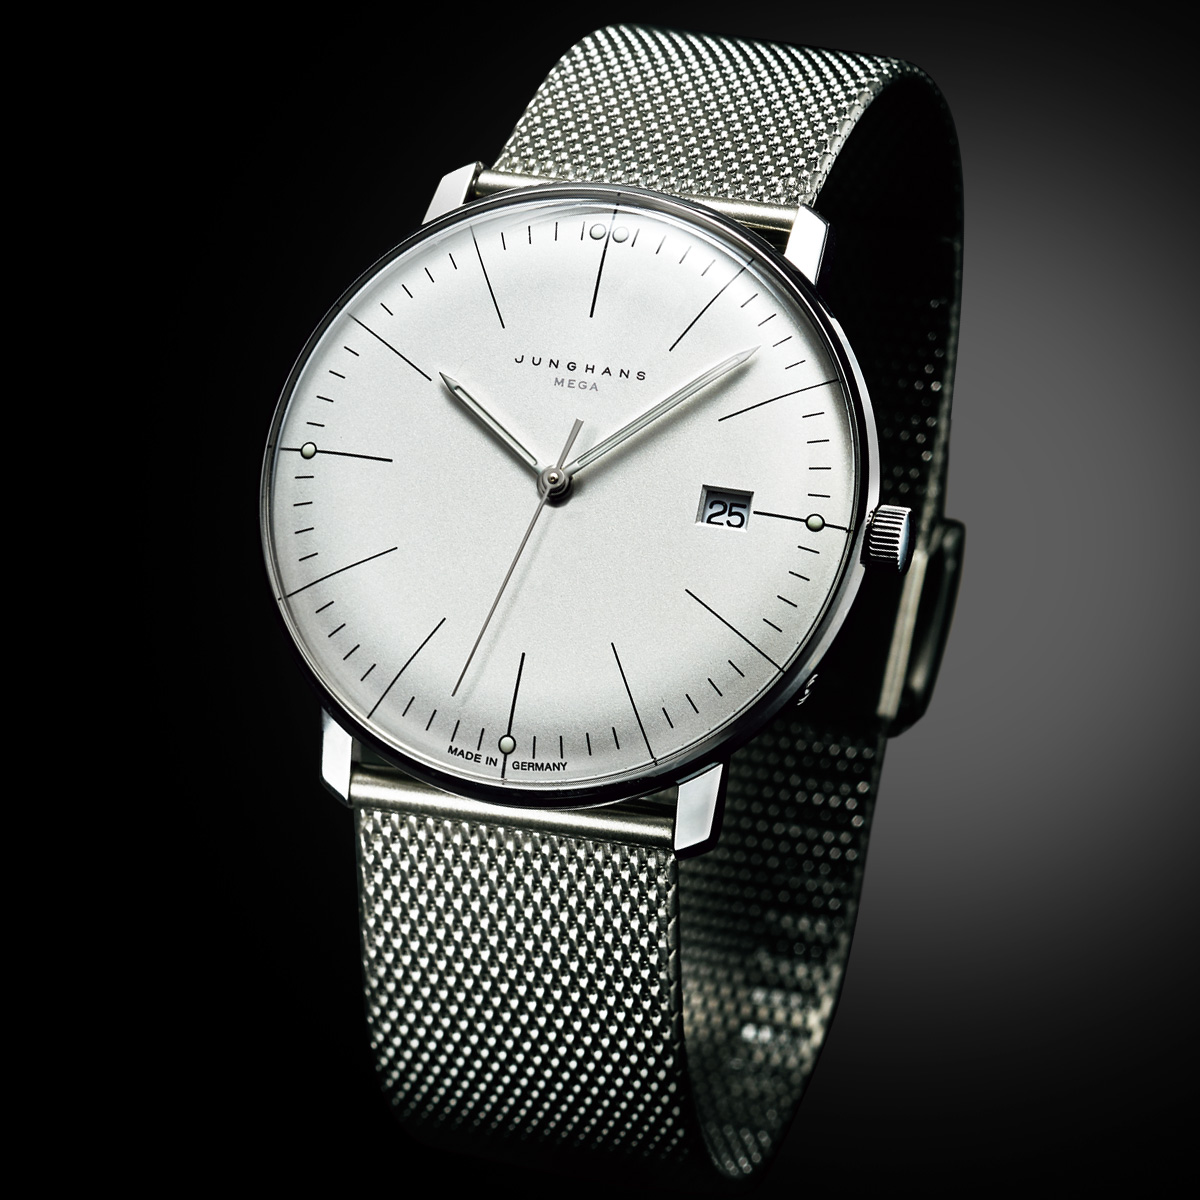 ユングハンス 電波式腕時計 マックス ビル デザイン ステンレスベルト ライトアップオンラインストア